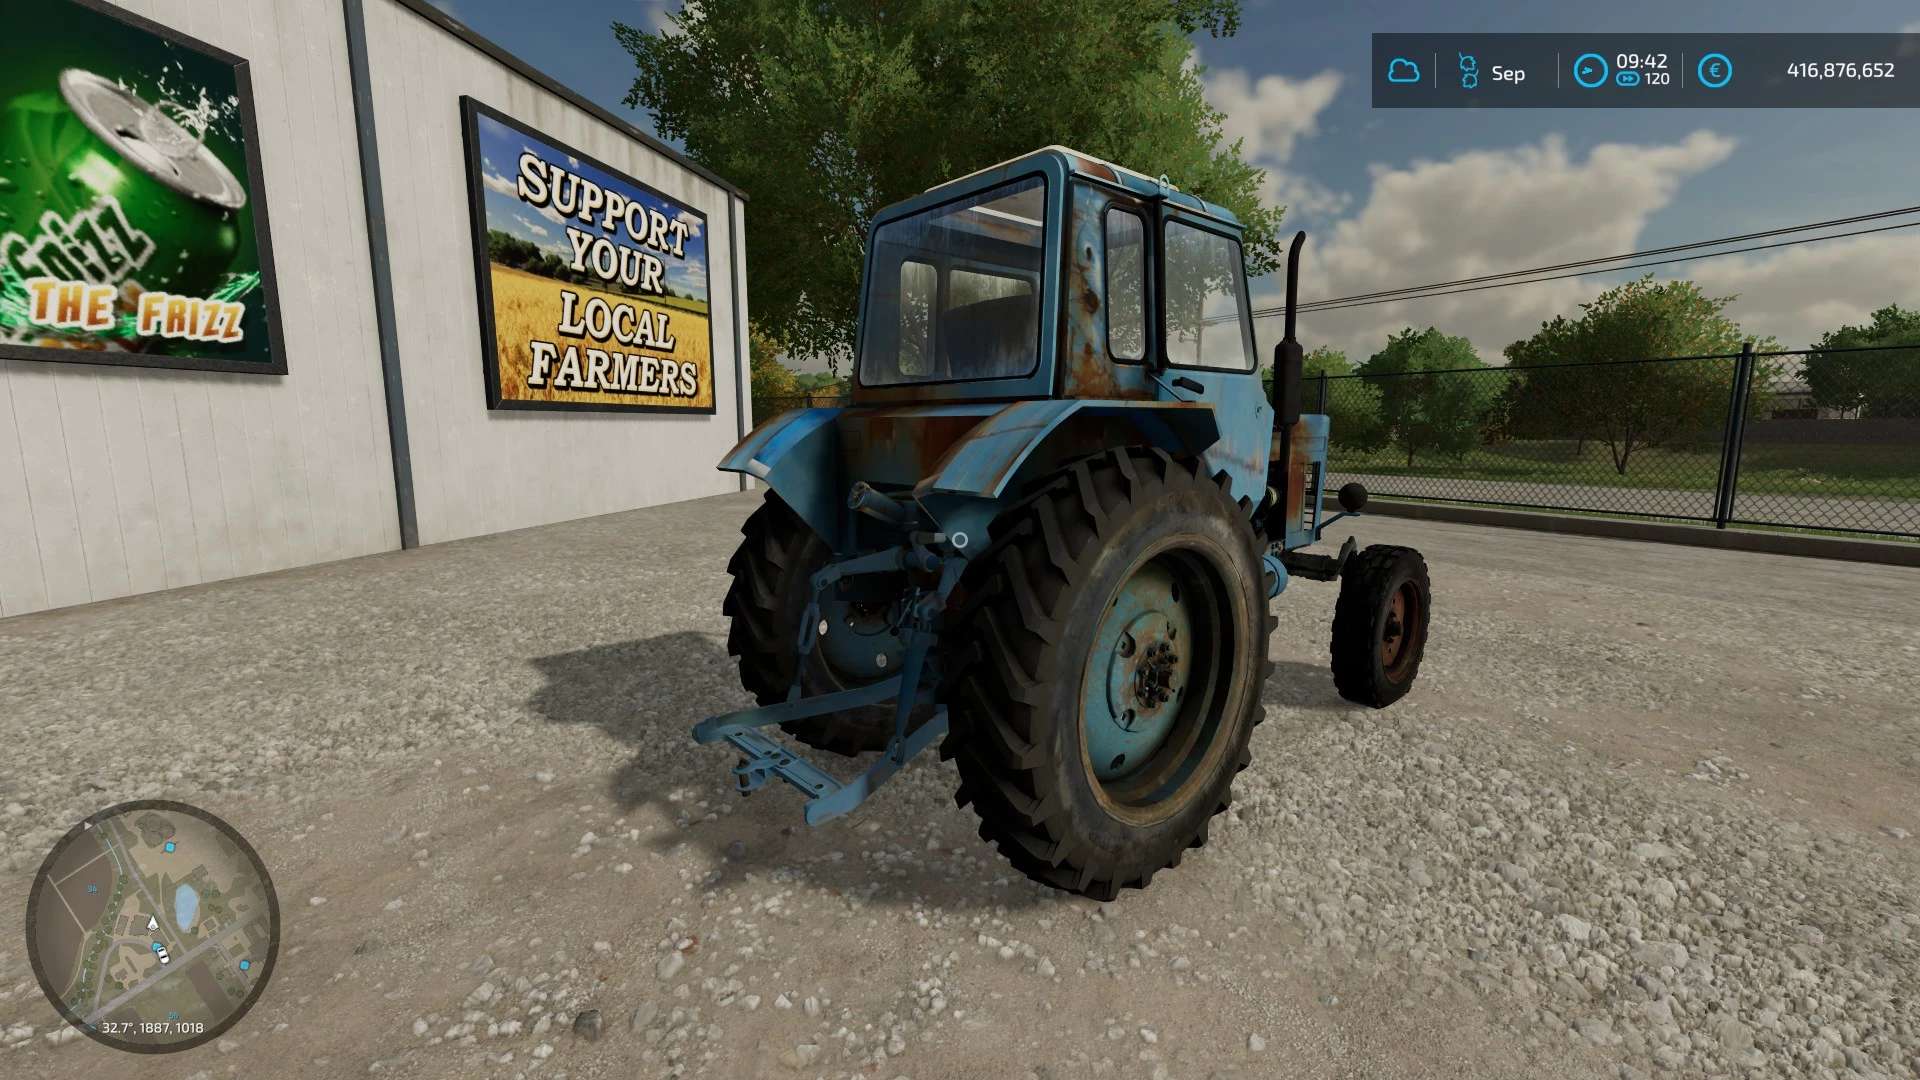 Traktor Mtz 80 V1000 Fs22 Mod Farming Simulator 22 Mod Porn Sex Picture 0565